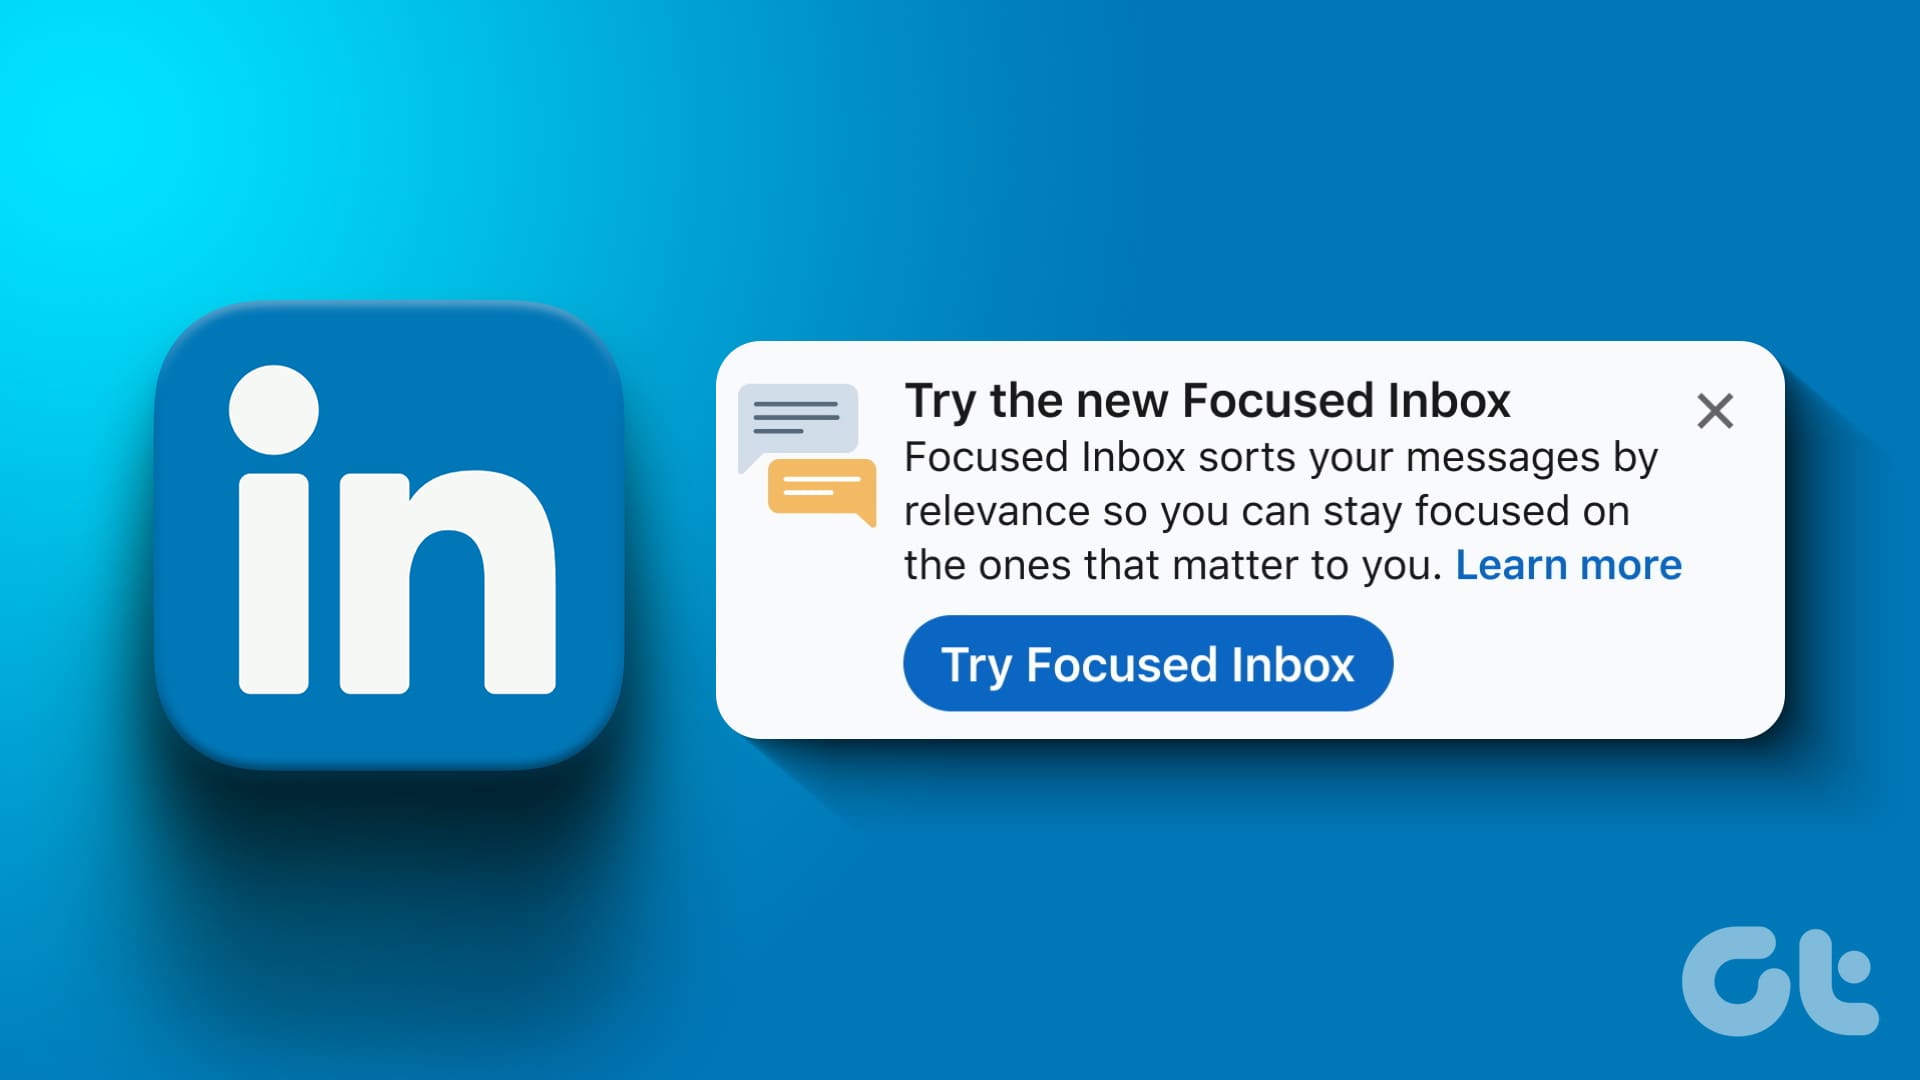 Turn Off Focused Inbox on LinkedIn